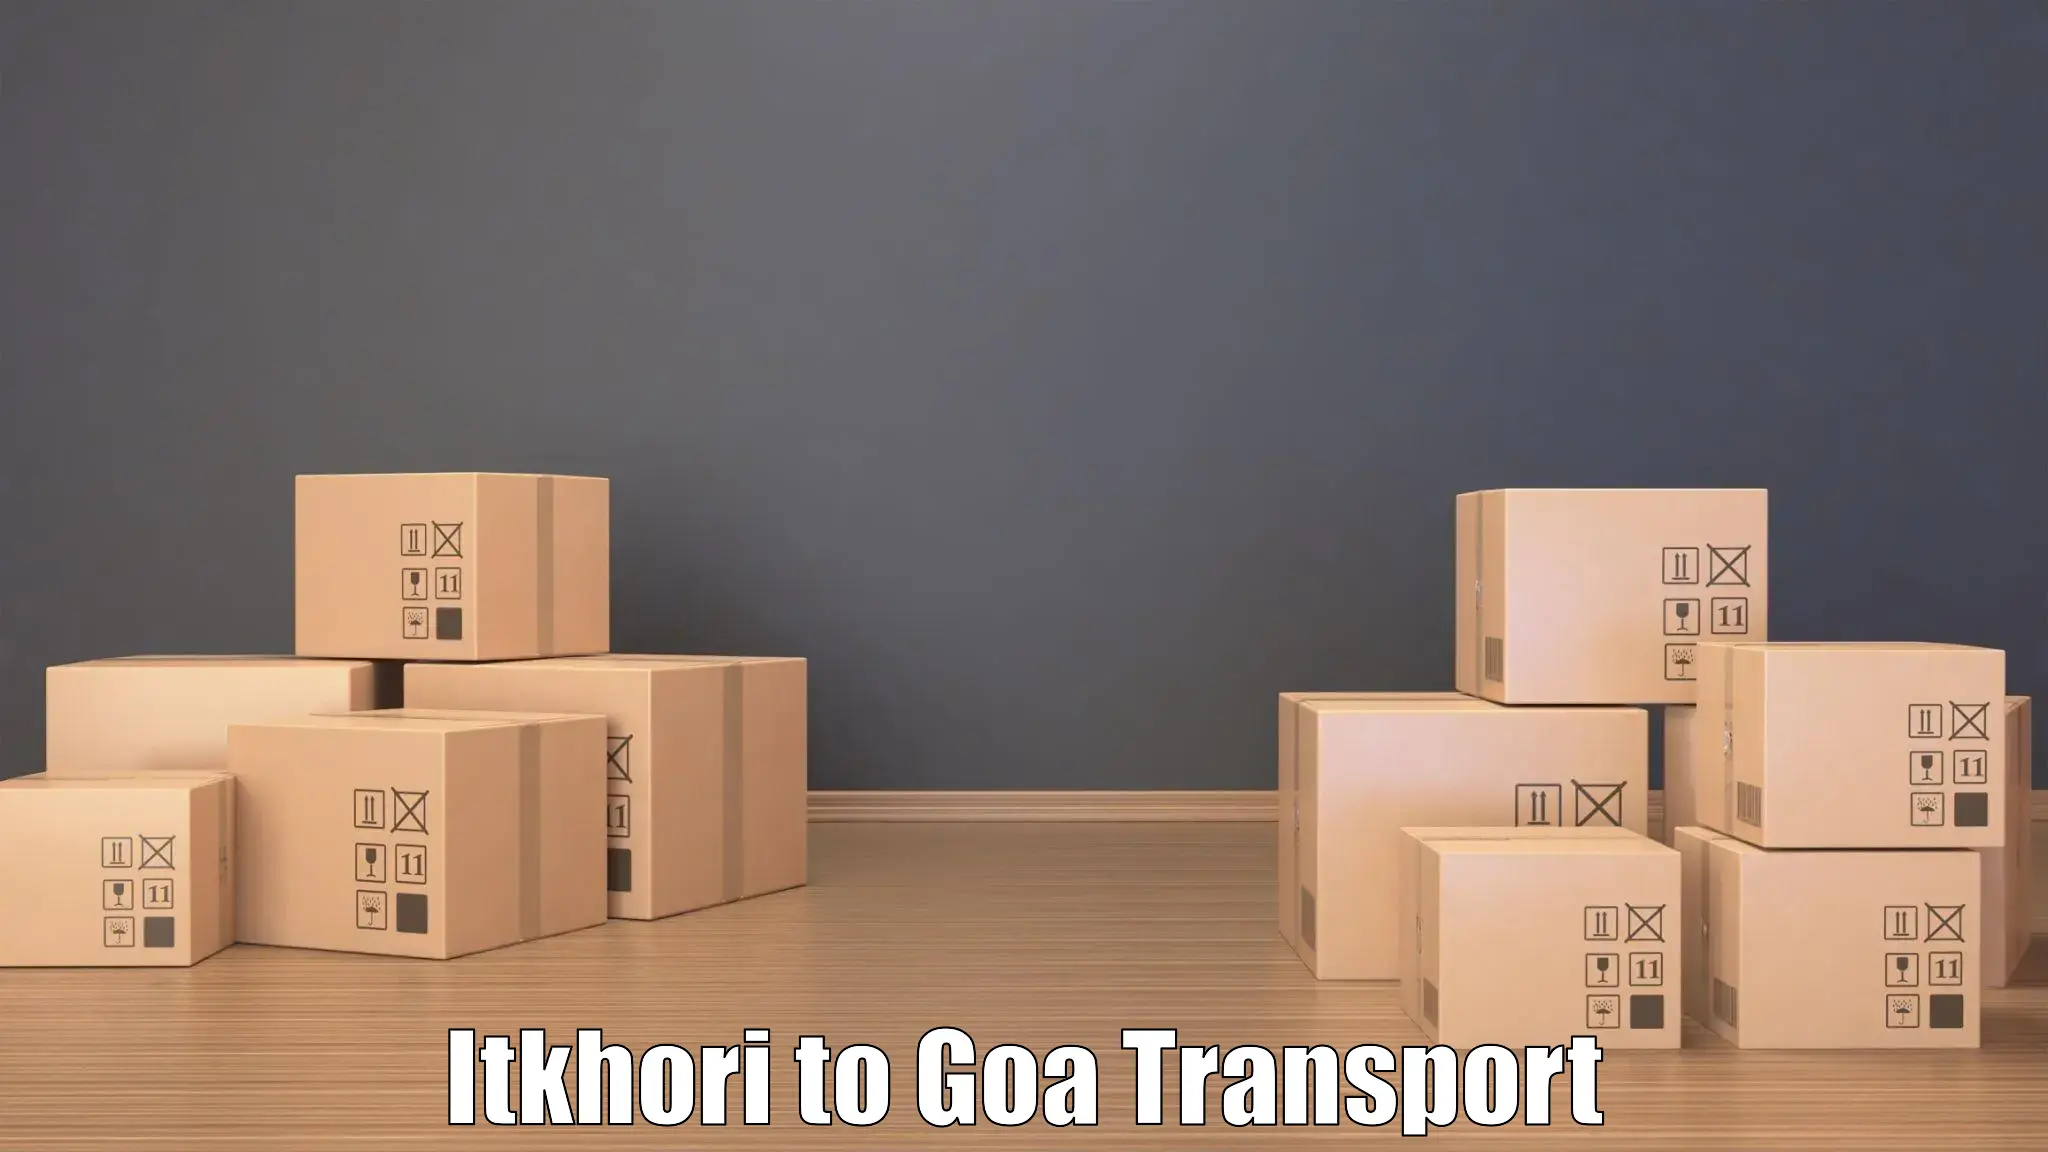 Bike transport service Itkhori to NIT Goa